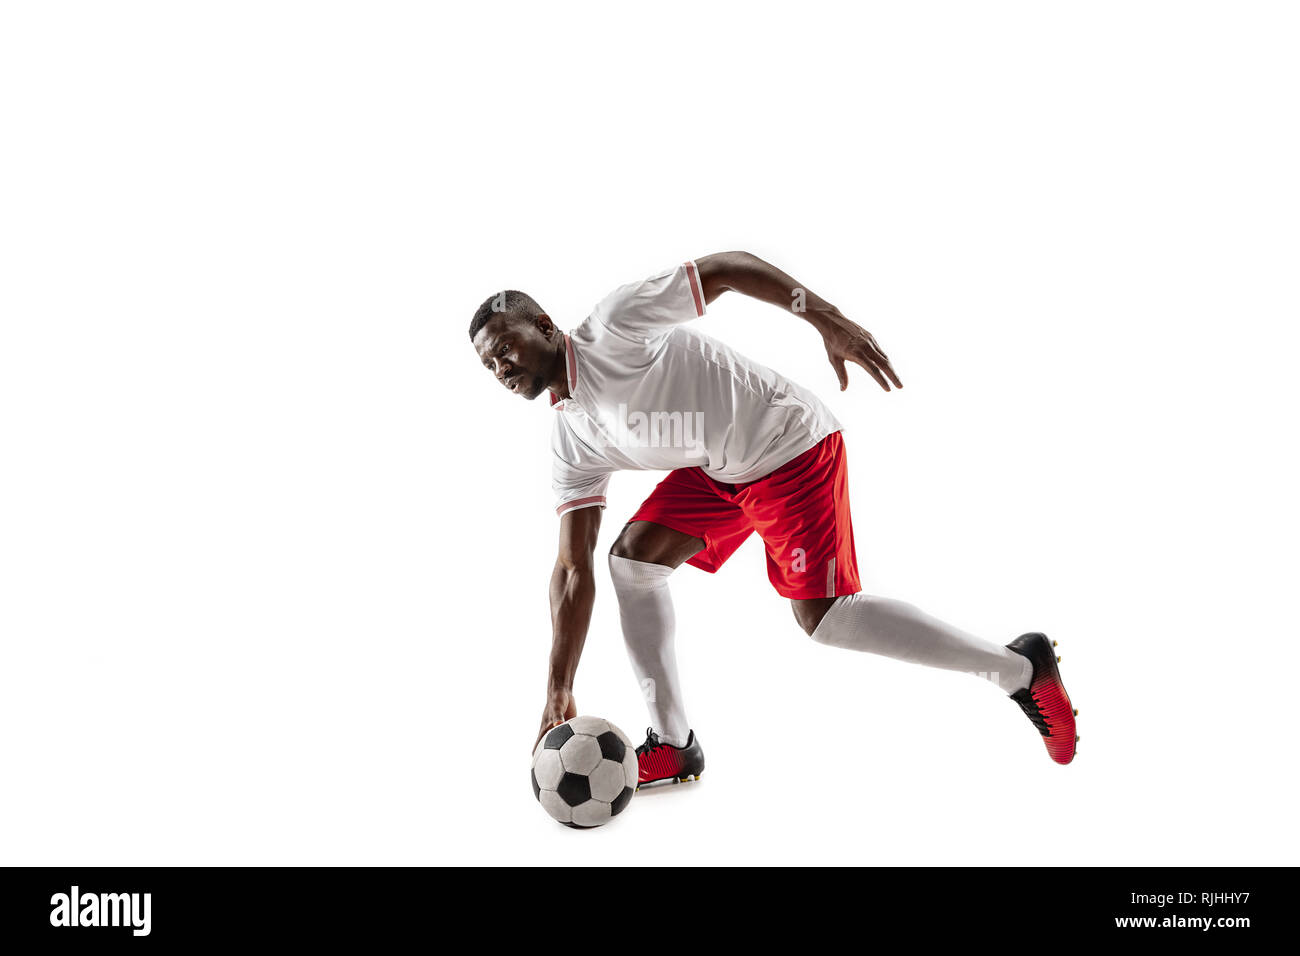 American football africain professionnel de joueur de football en motion isolated on white background studio. Mettre en place à l'homme en action, saut, mouvement à jeu. Banque D'Images